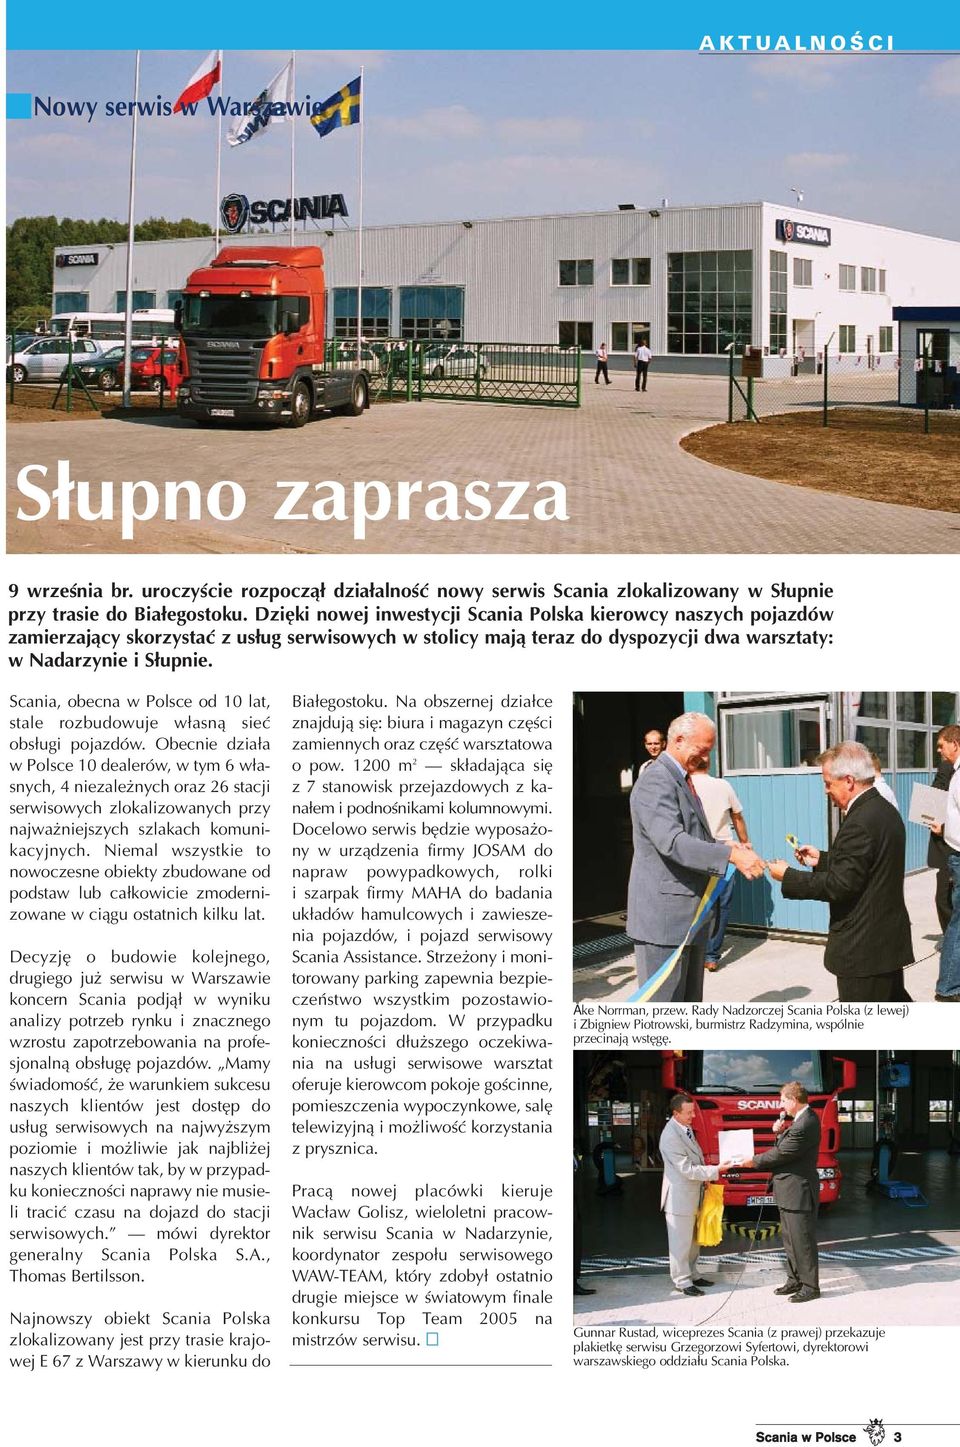 Scania, obecna w Polsce od 10 lat, stale rozbudowuje w³asn¹ sieæ obs³ugi pojazdów.